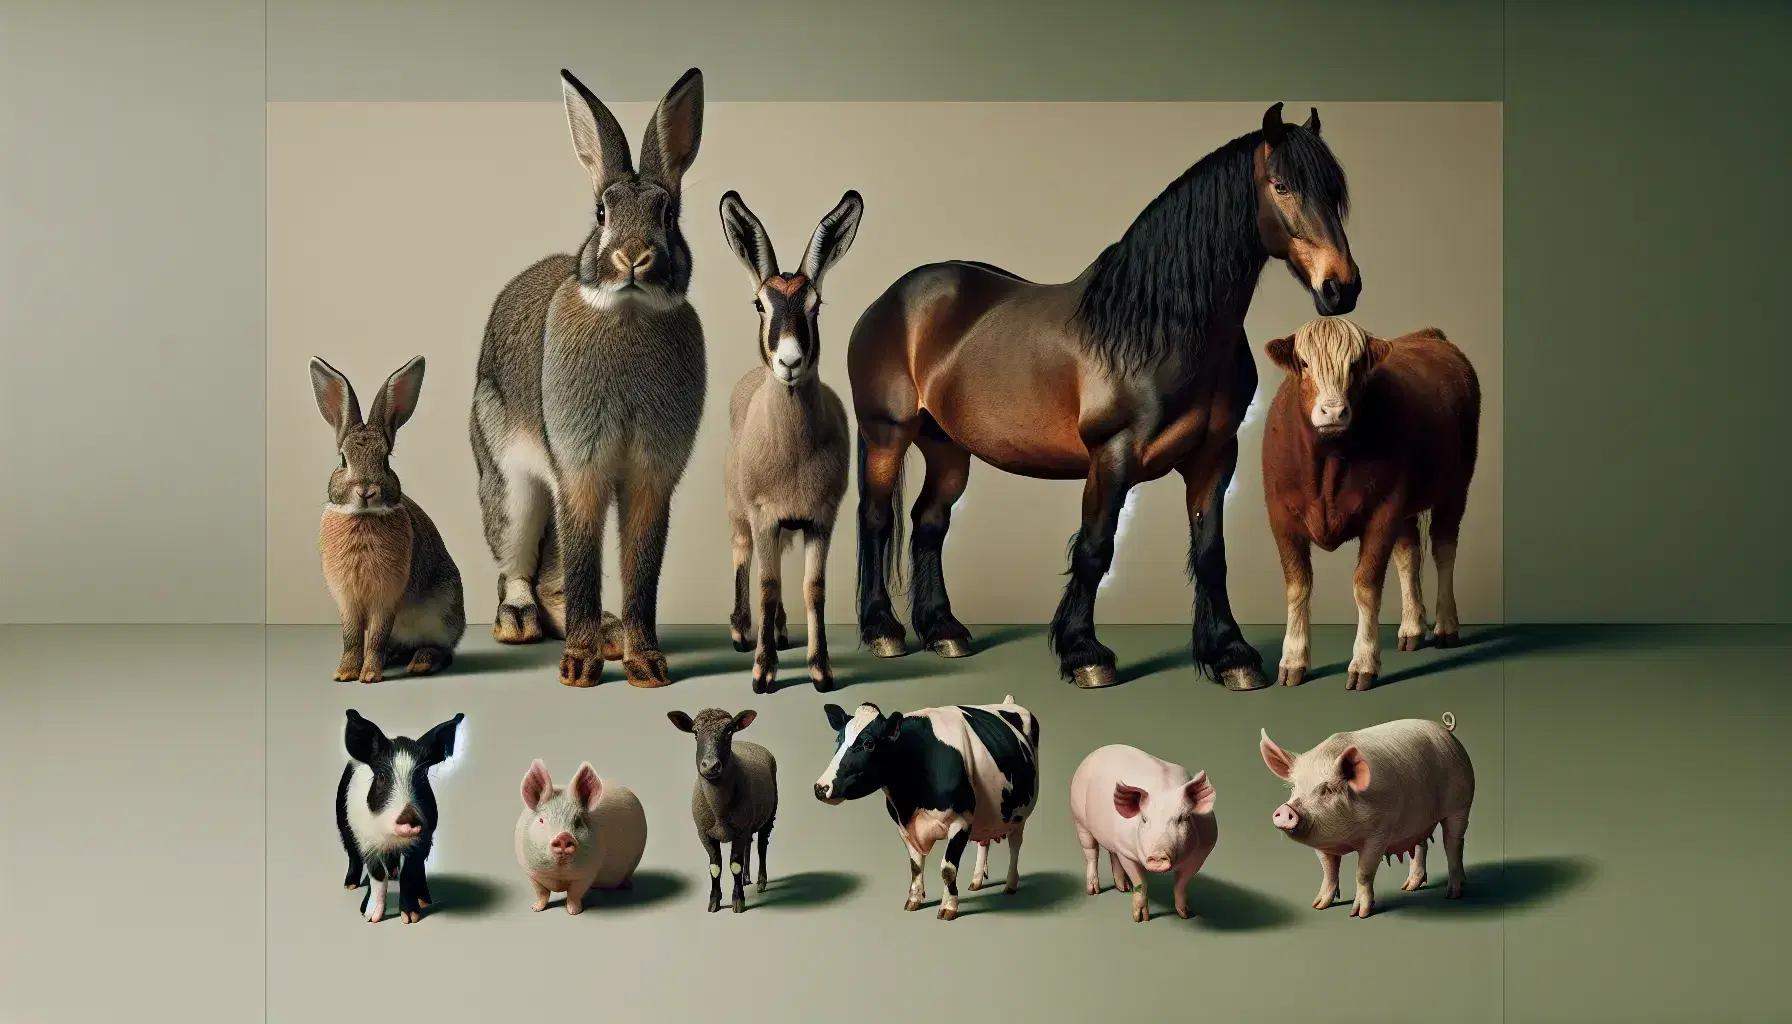 Coniglio grigio, capra marrone con corna, cavallo marrone scuro, mucca maculata e maiale rosa in fila su sfondo neutro.